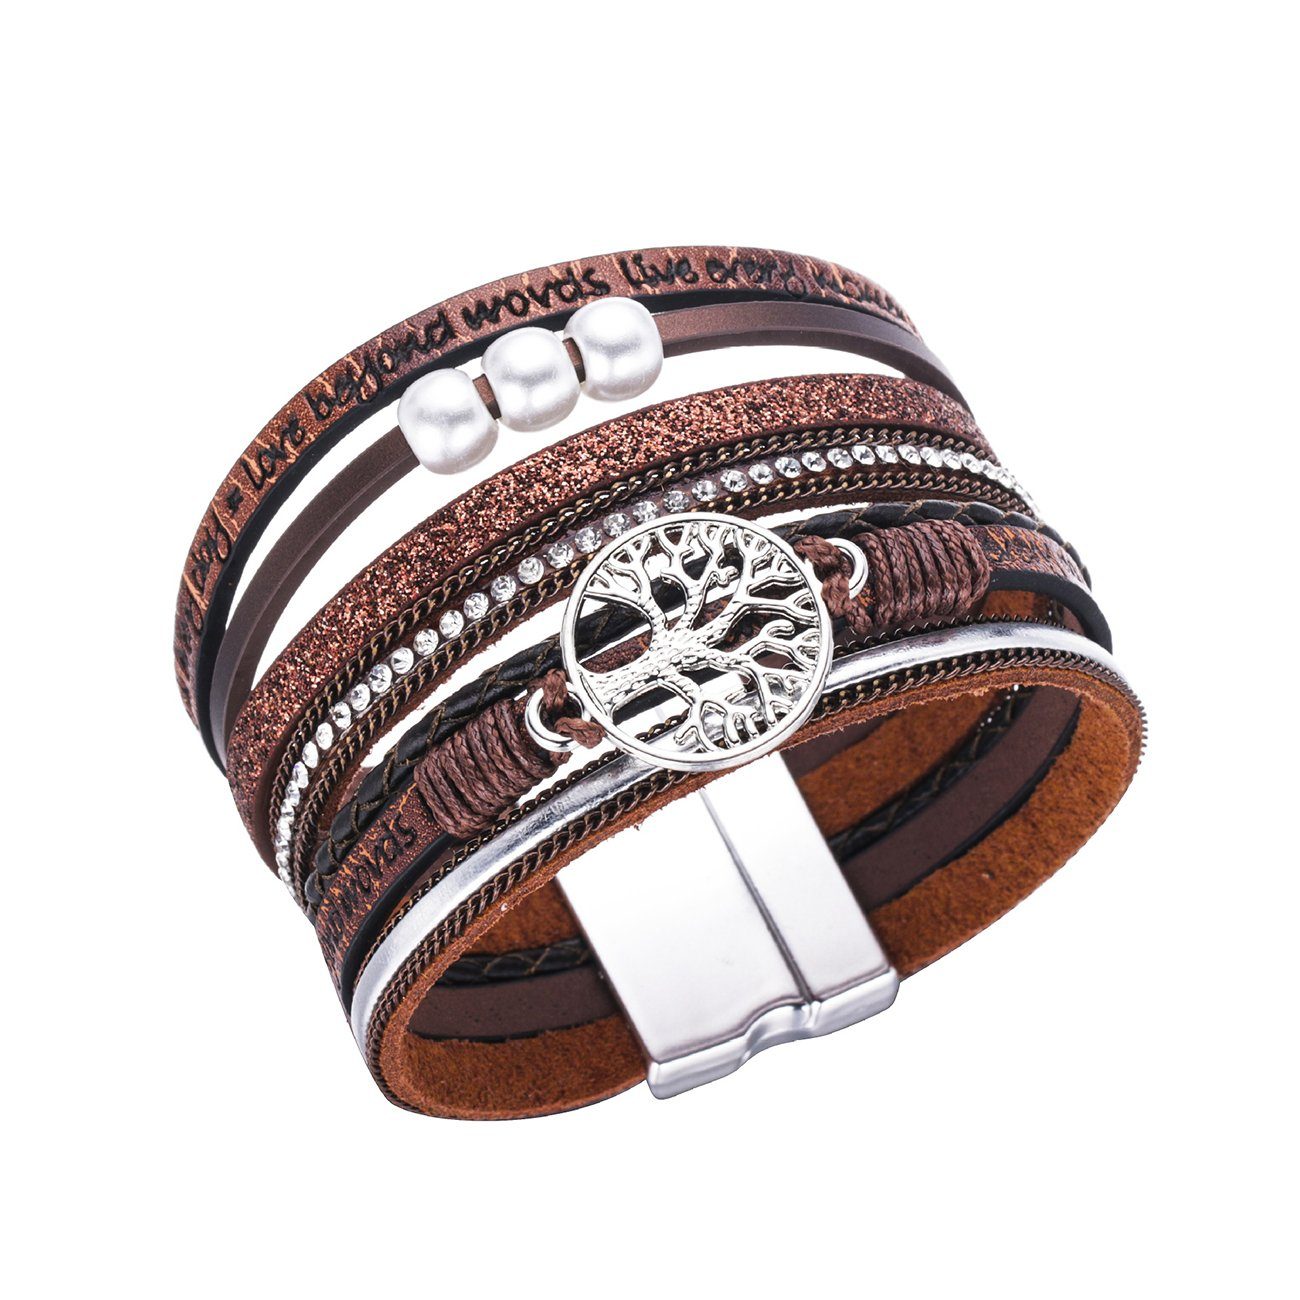 Herz Armband Armband für Wickelarmband Alster Lebensbaum Alster Braun Damen, Herz mit Perlen, J0333